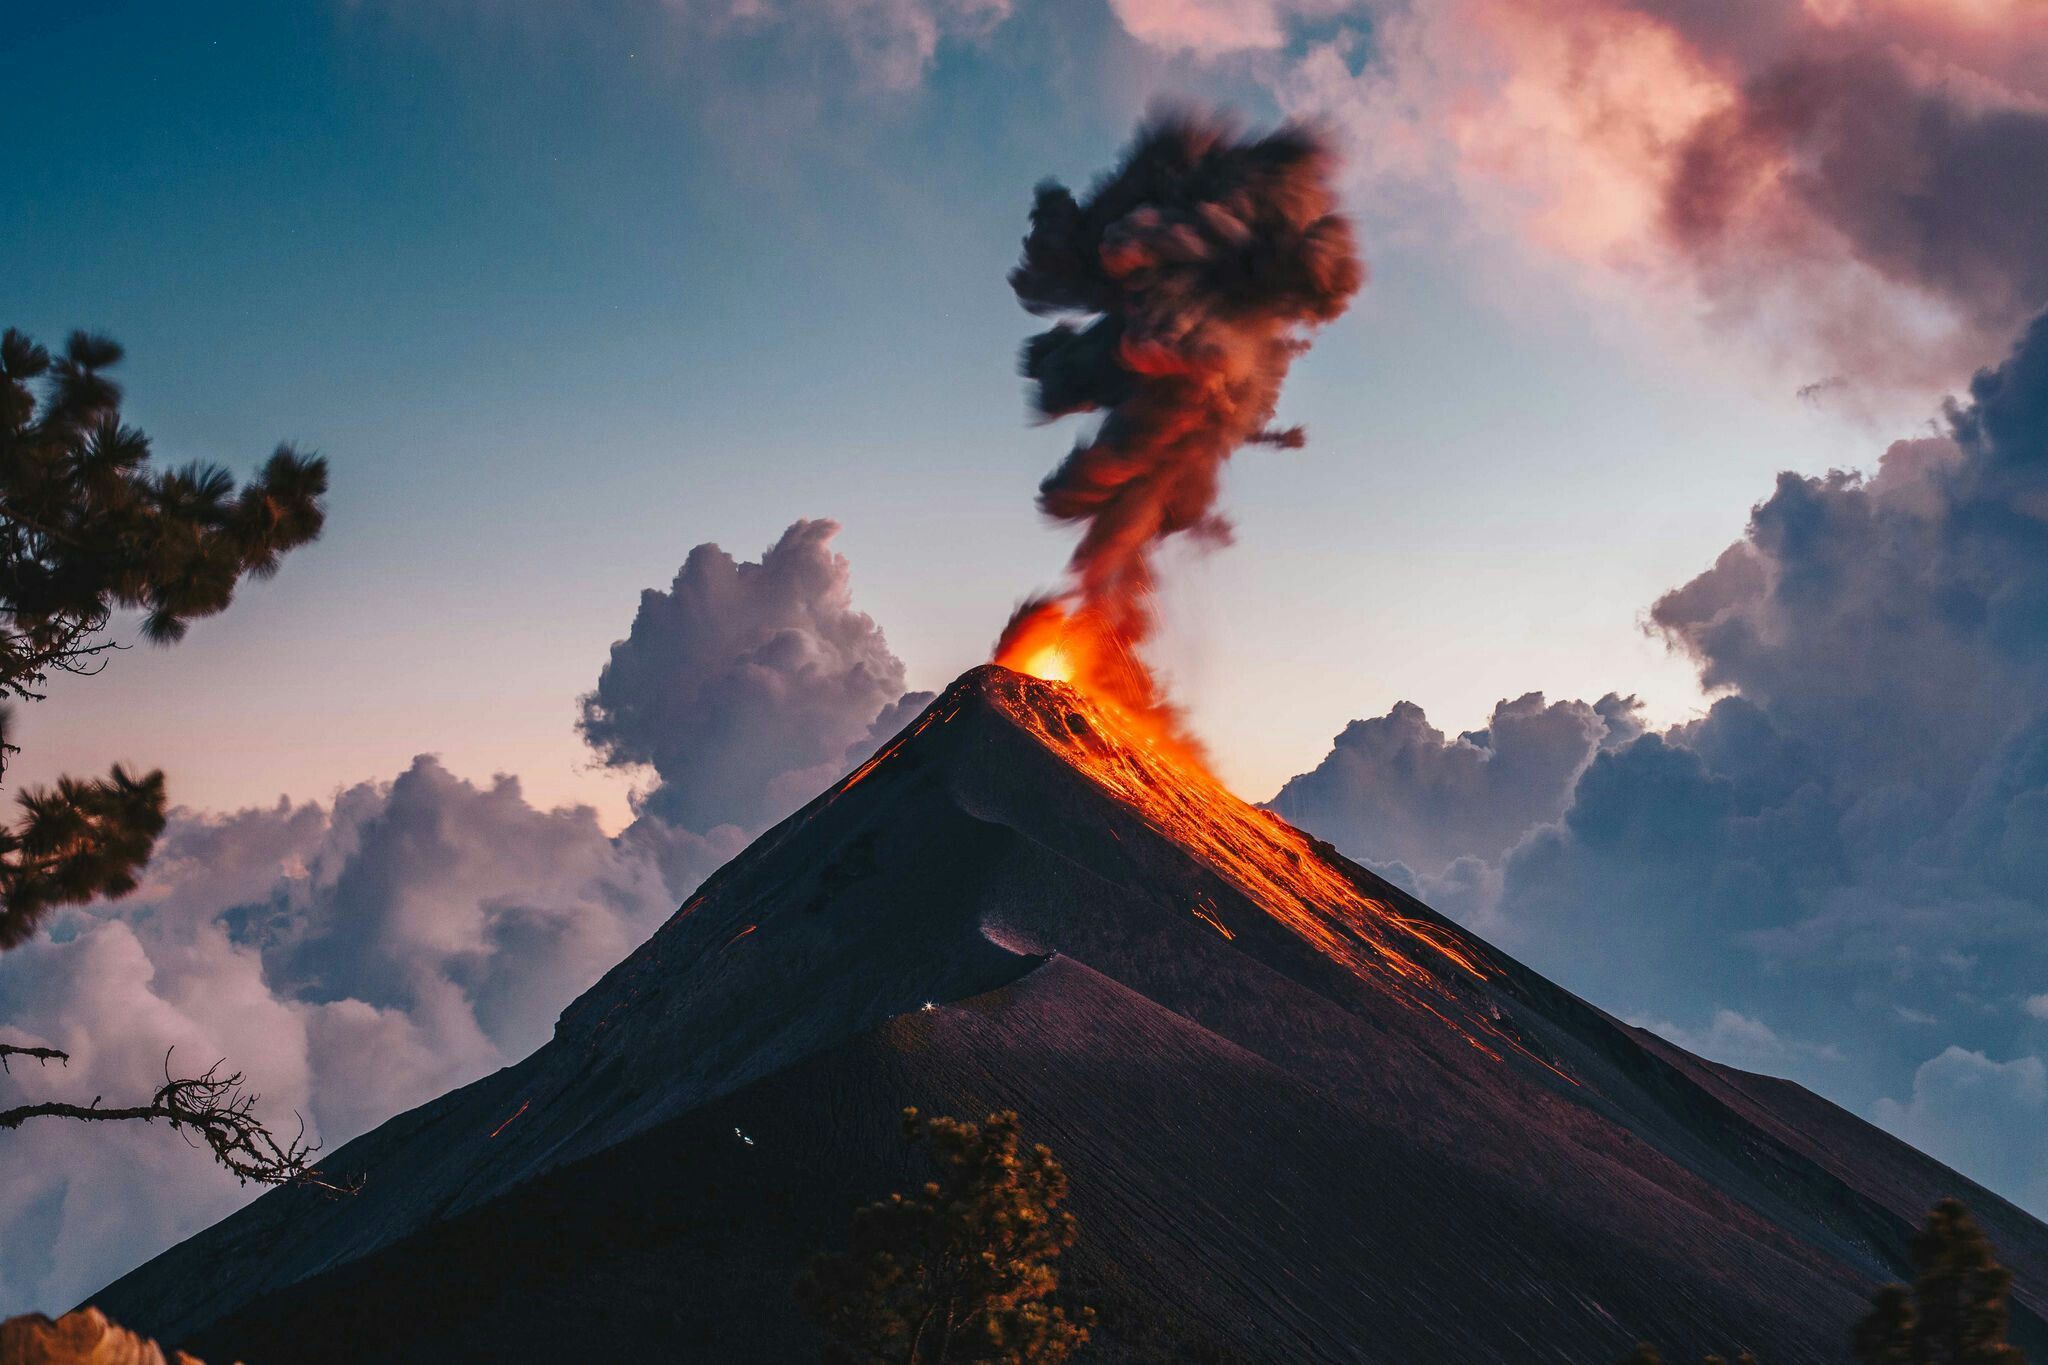 Phong cảnh núi lửa hoạt động 16